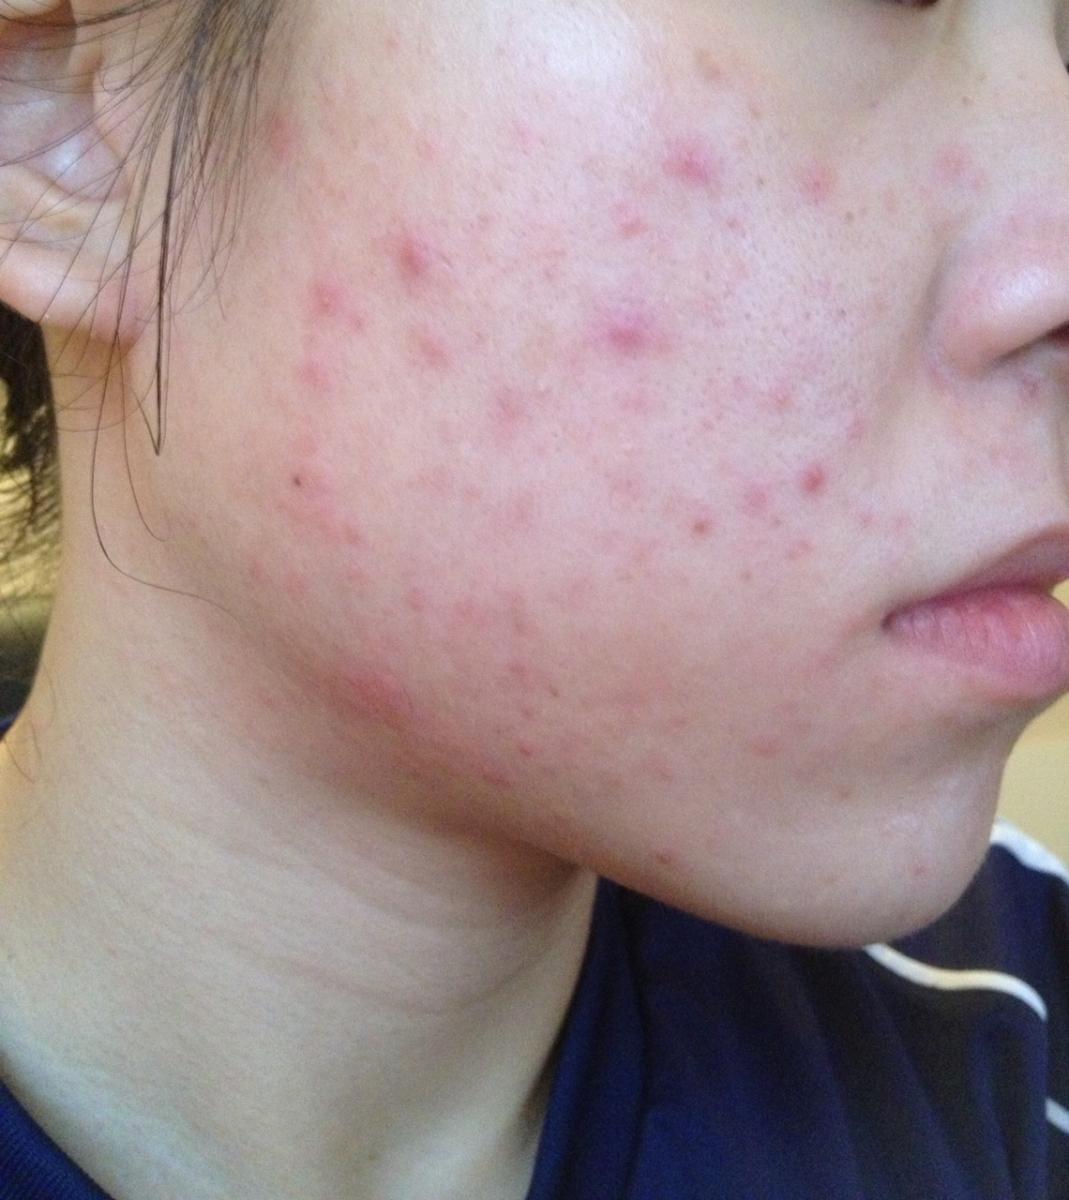 doxycycline acne